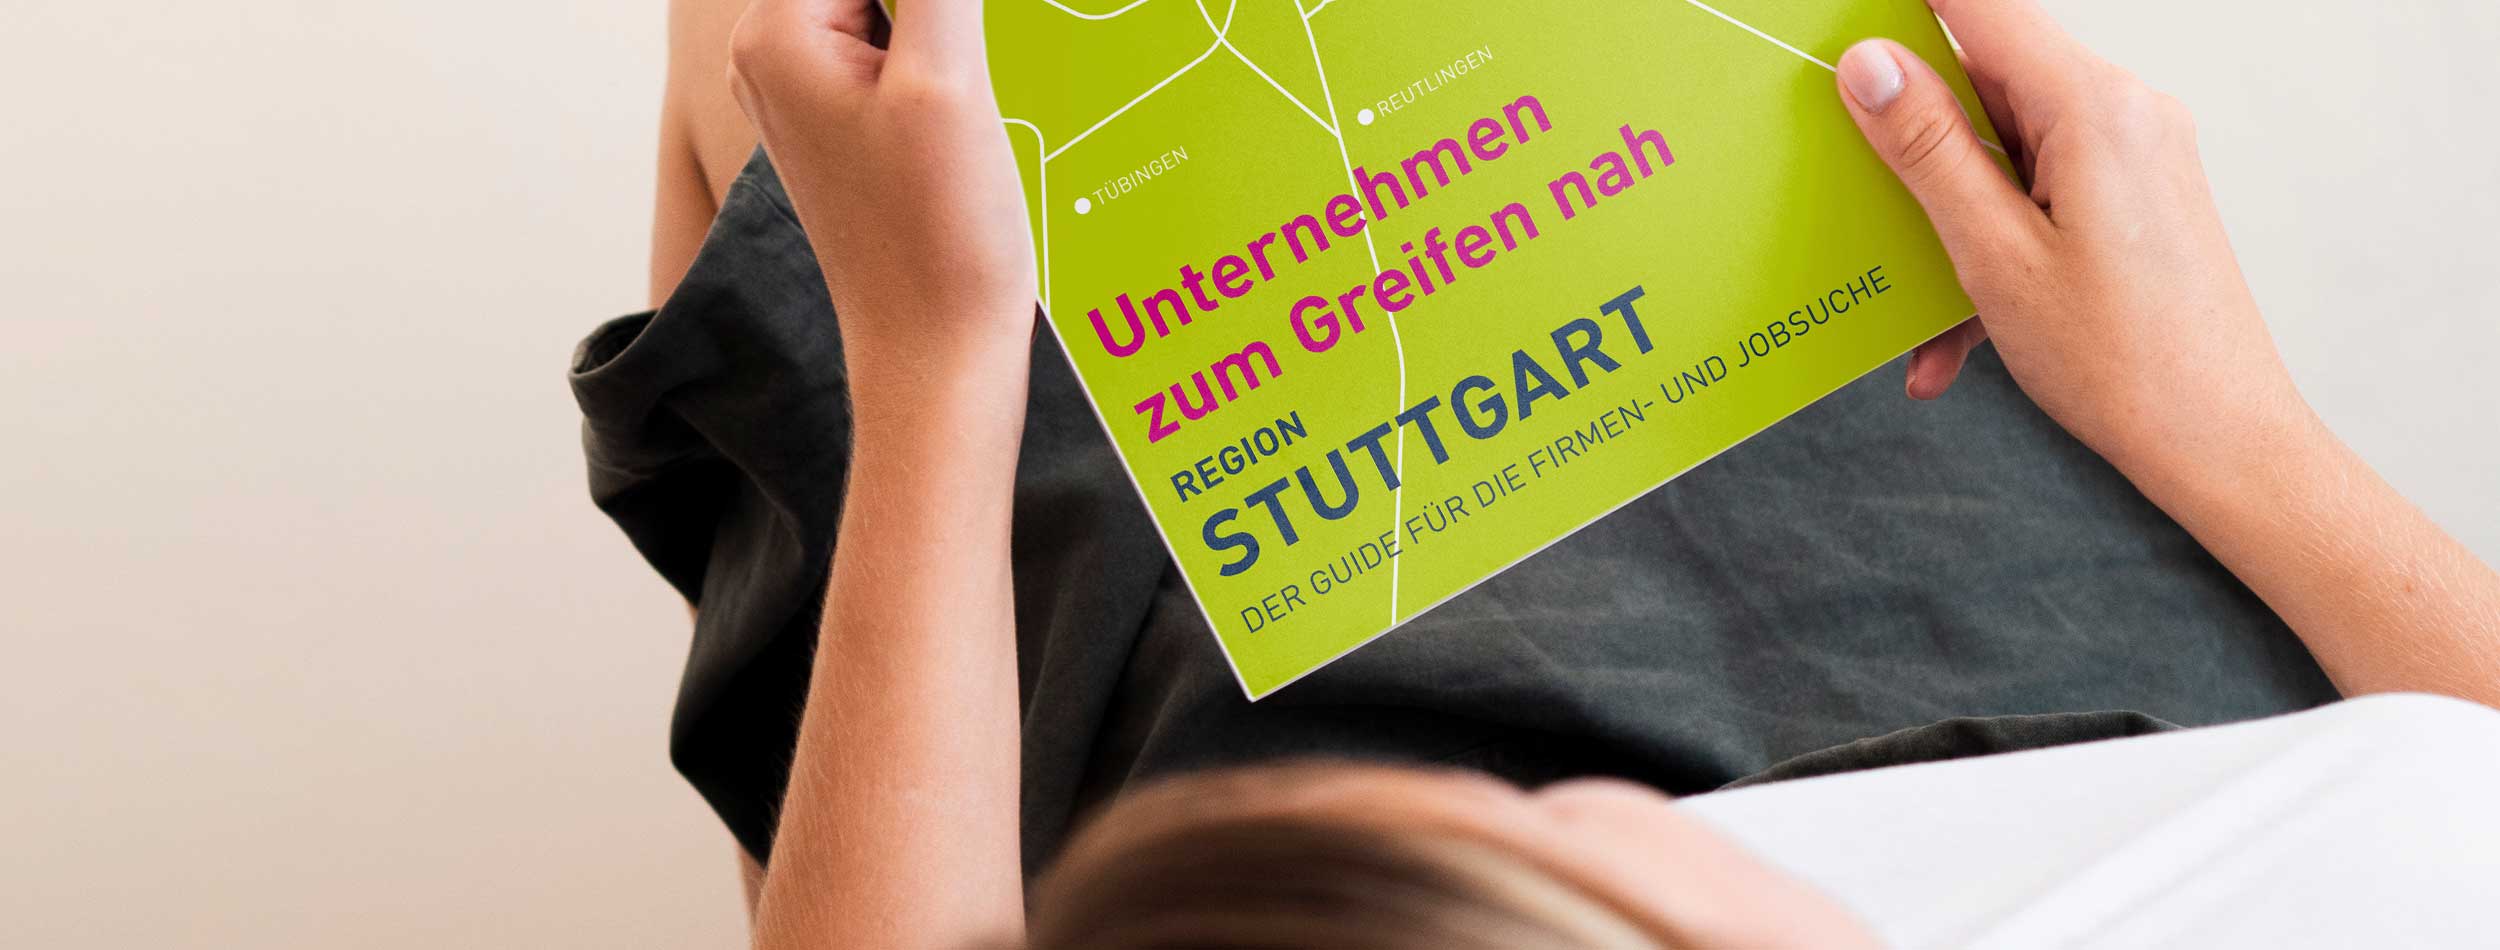 PROFFILE Firmenguide 2020 für Region Stuttgart